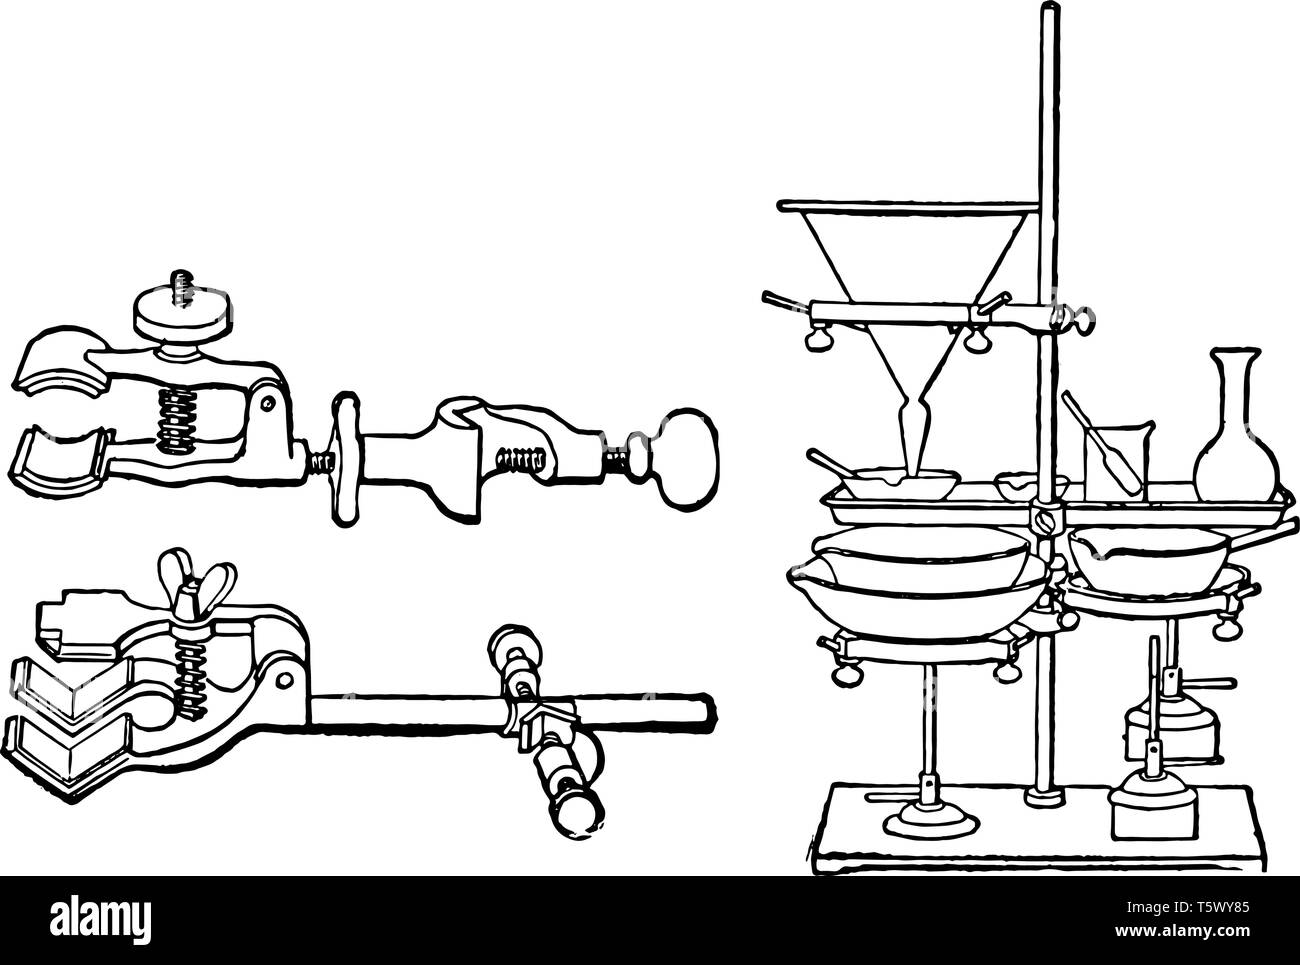 Das erste Bild ist von Klemmen in der Chemie Labs verwendet Reagenzgläser und andere Apparate halten, vintage Strichzeichnung oder Gravur Abbildung. Stock Vektor